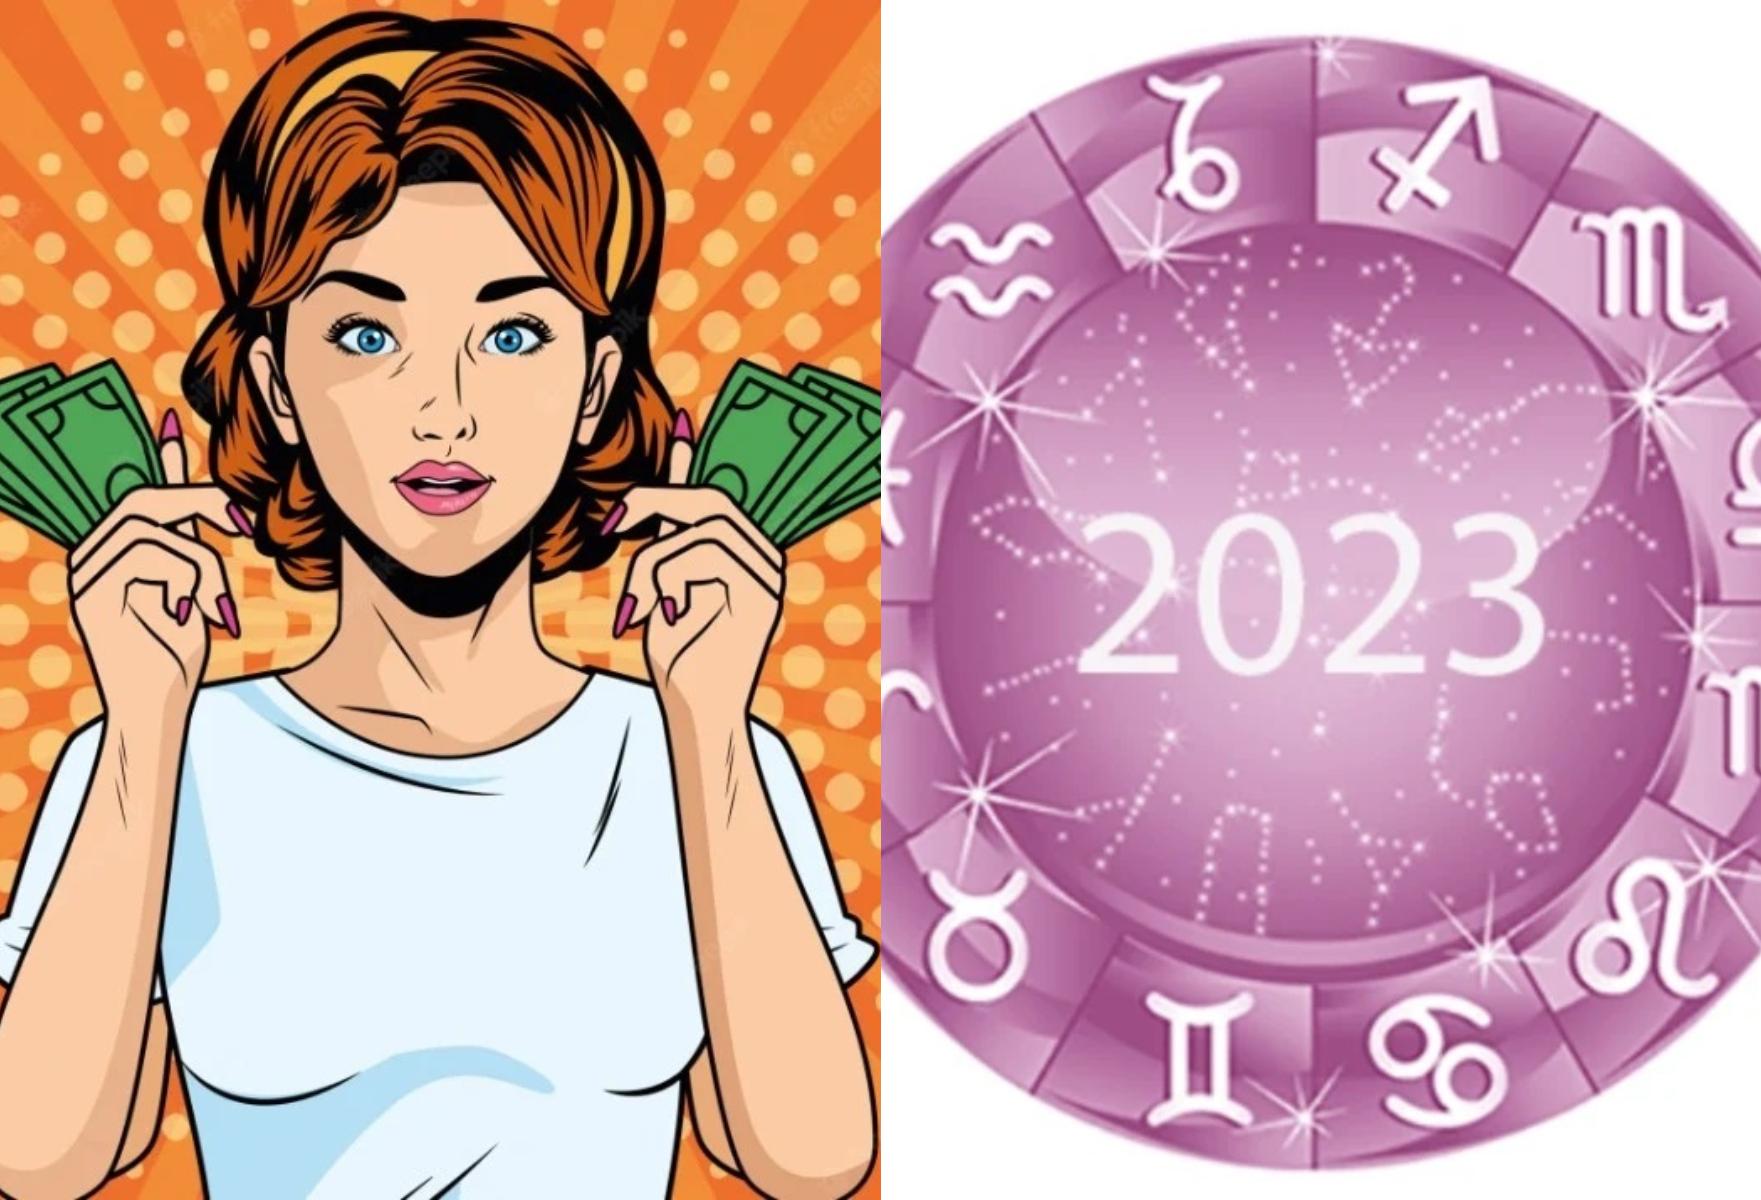 Βάλε την ημερομηνία γέννησης σου και μάθε τι θα σου συμβεί το 2023